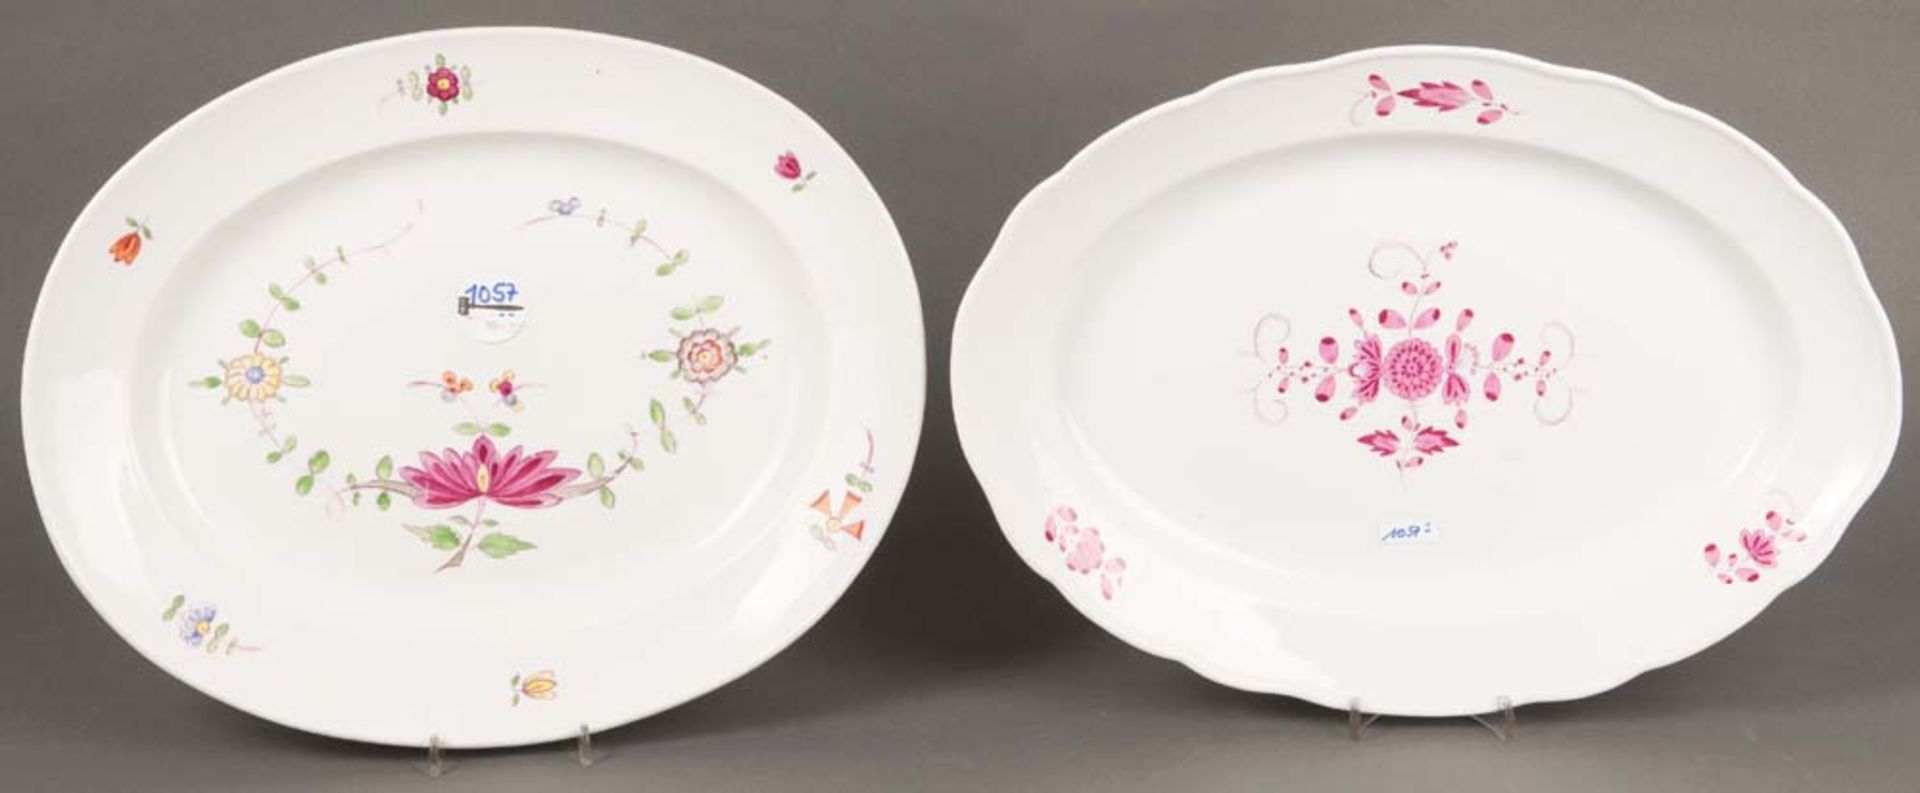 Zwei ovale Platten. Meissen 1774-1814 und später. Porzellan, bunt bemalt, mit Floraldekor, verso